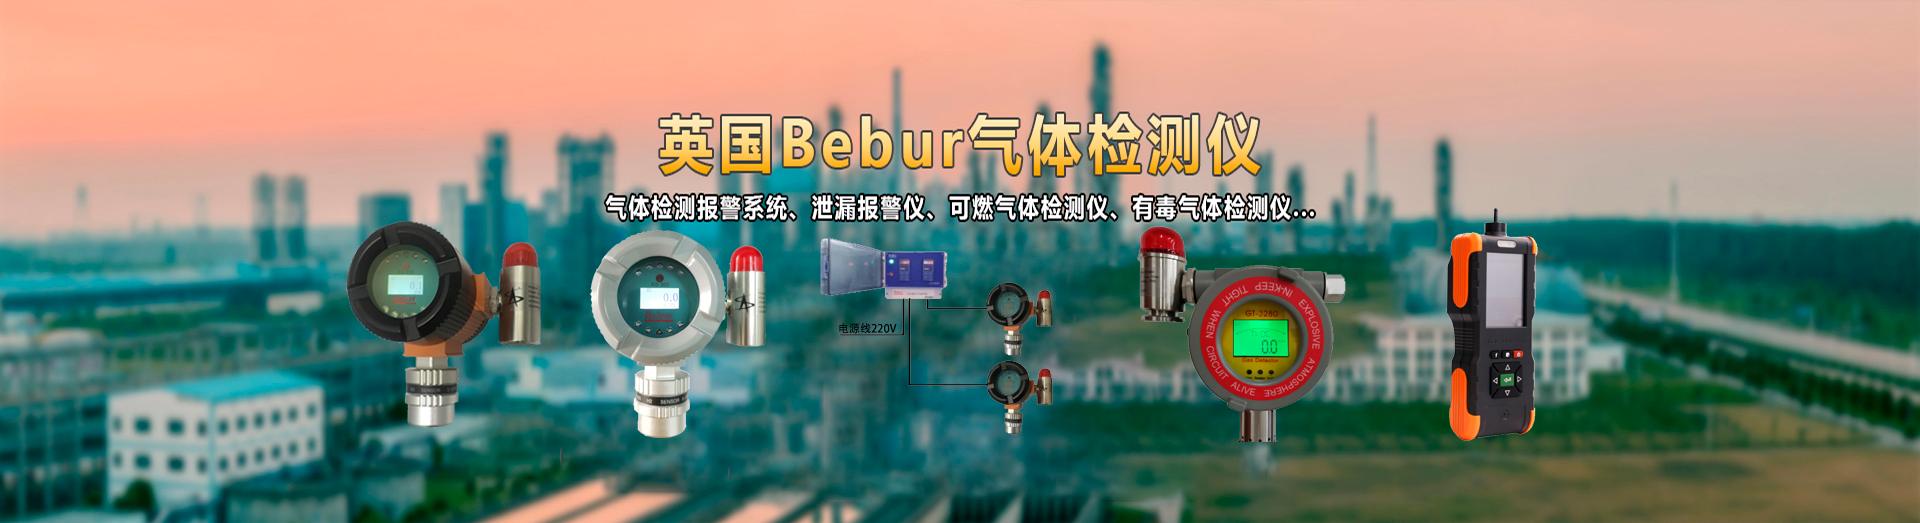 英国Bebur进口氩气检测仪系列产品